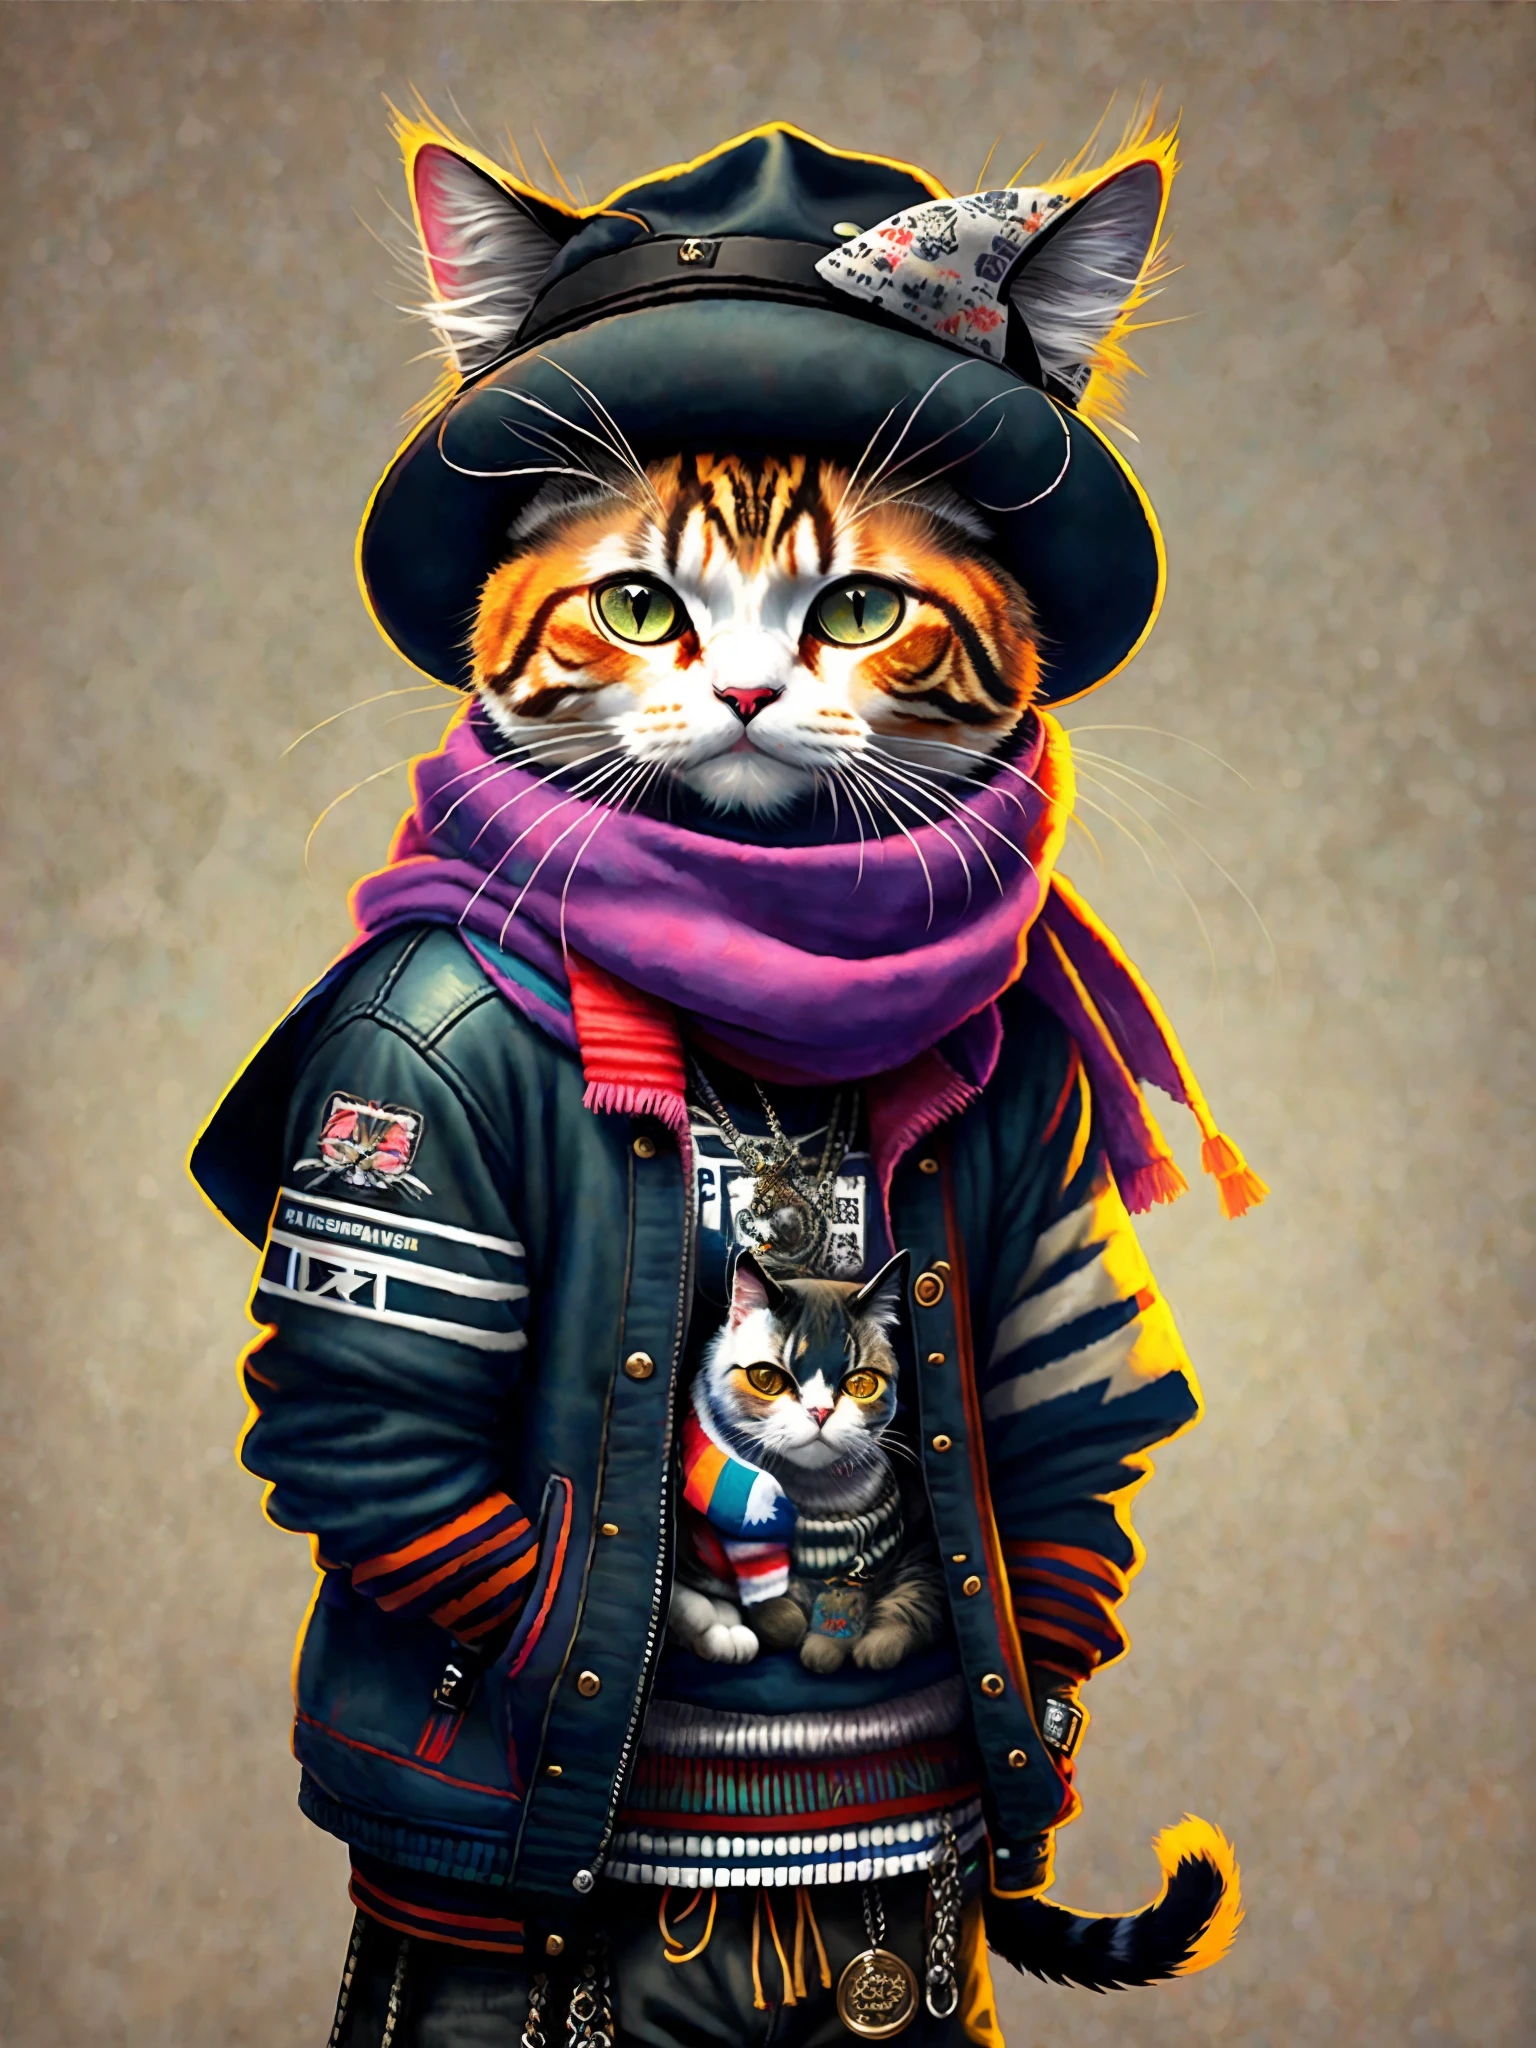 un cuadro de un gato con sombrero y bufanda, tendencia en la estación de arte, vestido con ropa punk, representación hiperrealista detallada, british gang member, estilo callejero, pose intimidante, planeta de los gatos, ropa con moda, samurai urbano, meow, Características eslavas occidentales, 8 1 5